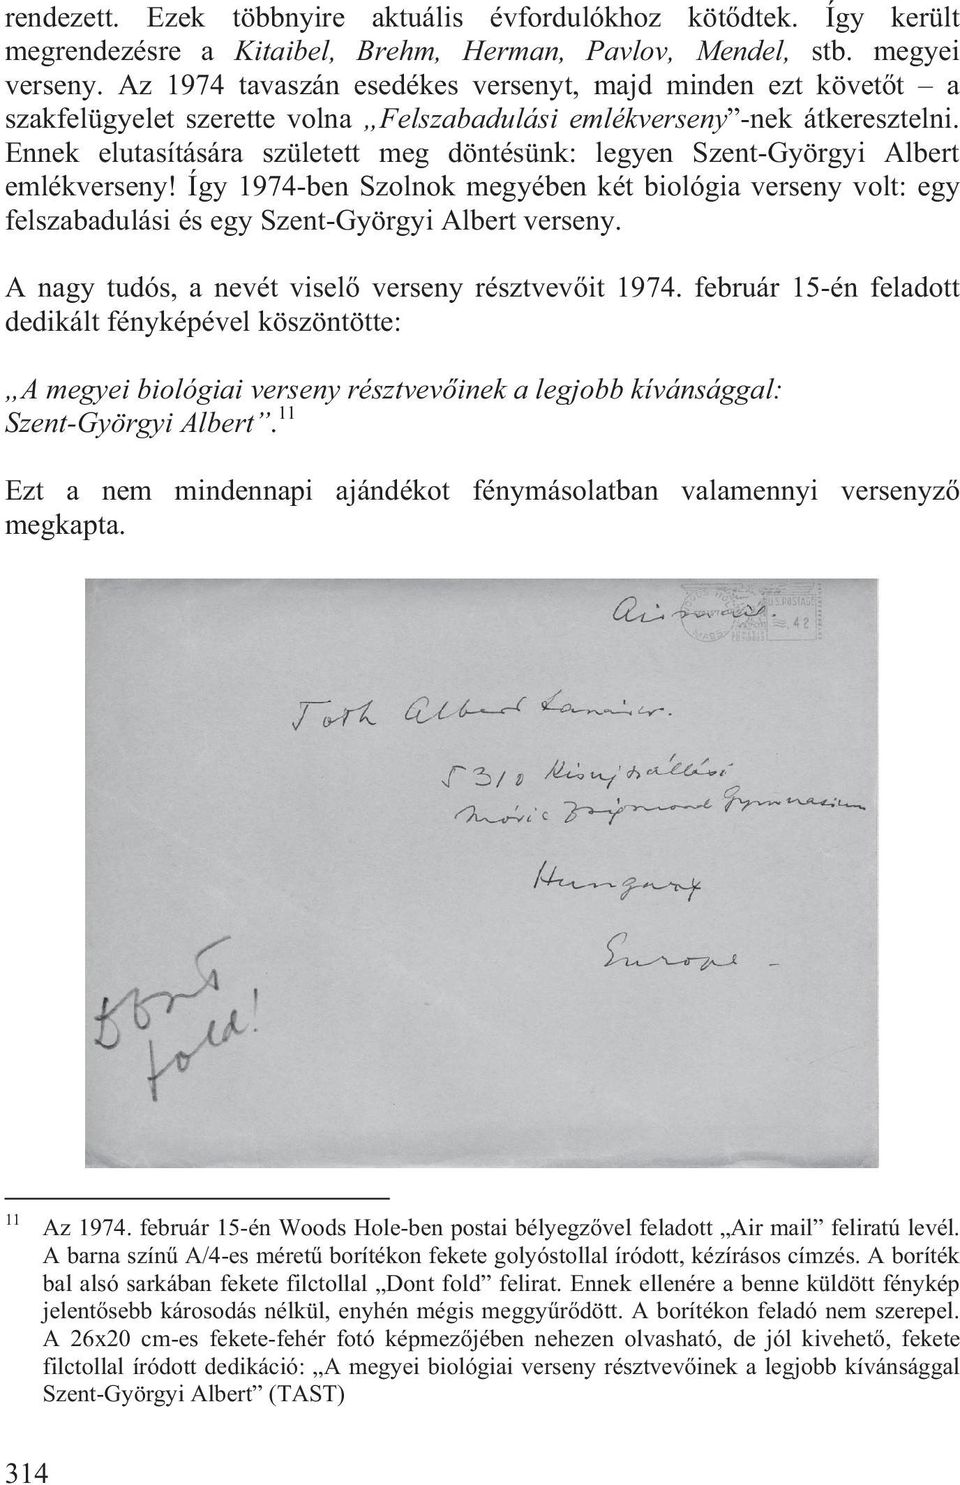 Ennek elutasítására született meg döntésünk: legyen Szent-Györgyi Albert emlékverseny! Így 1974-ben Szolnok megyében két biológia verseny volt: egy felszabadulási és egy Szent-Györgyi Albert verseny.